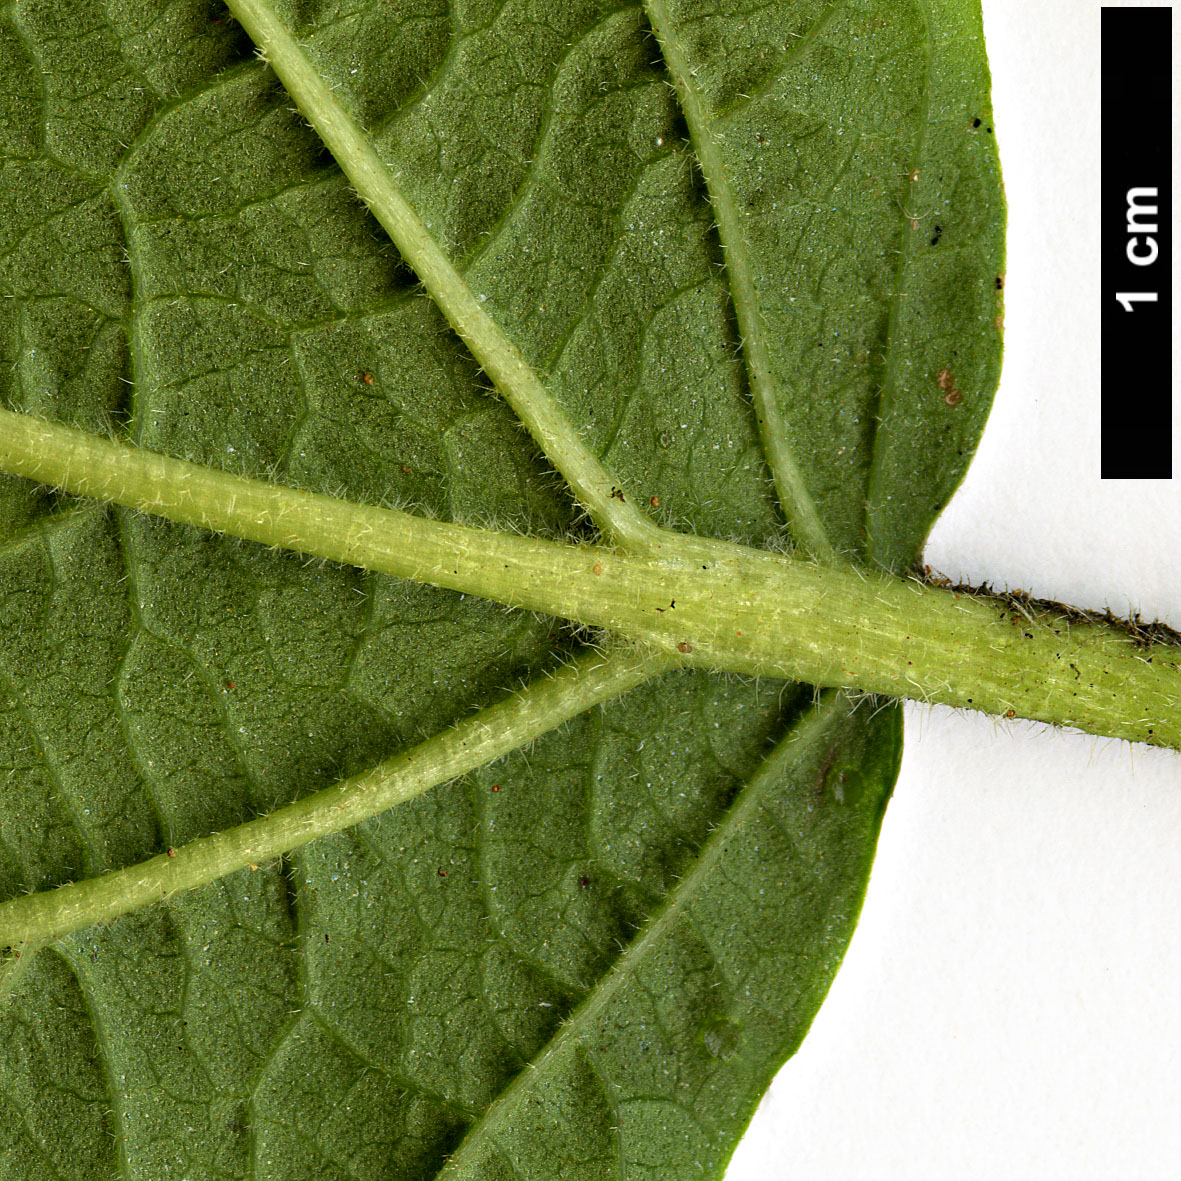 High resolution image: Family: Adoxaceae - Genus: Viburnum - Taxon: dilatatum - SpeciesSub: f. pilosum